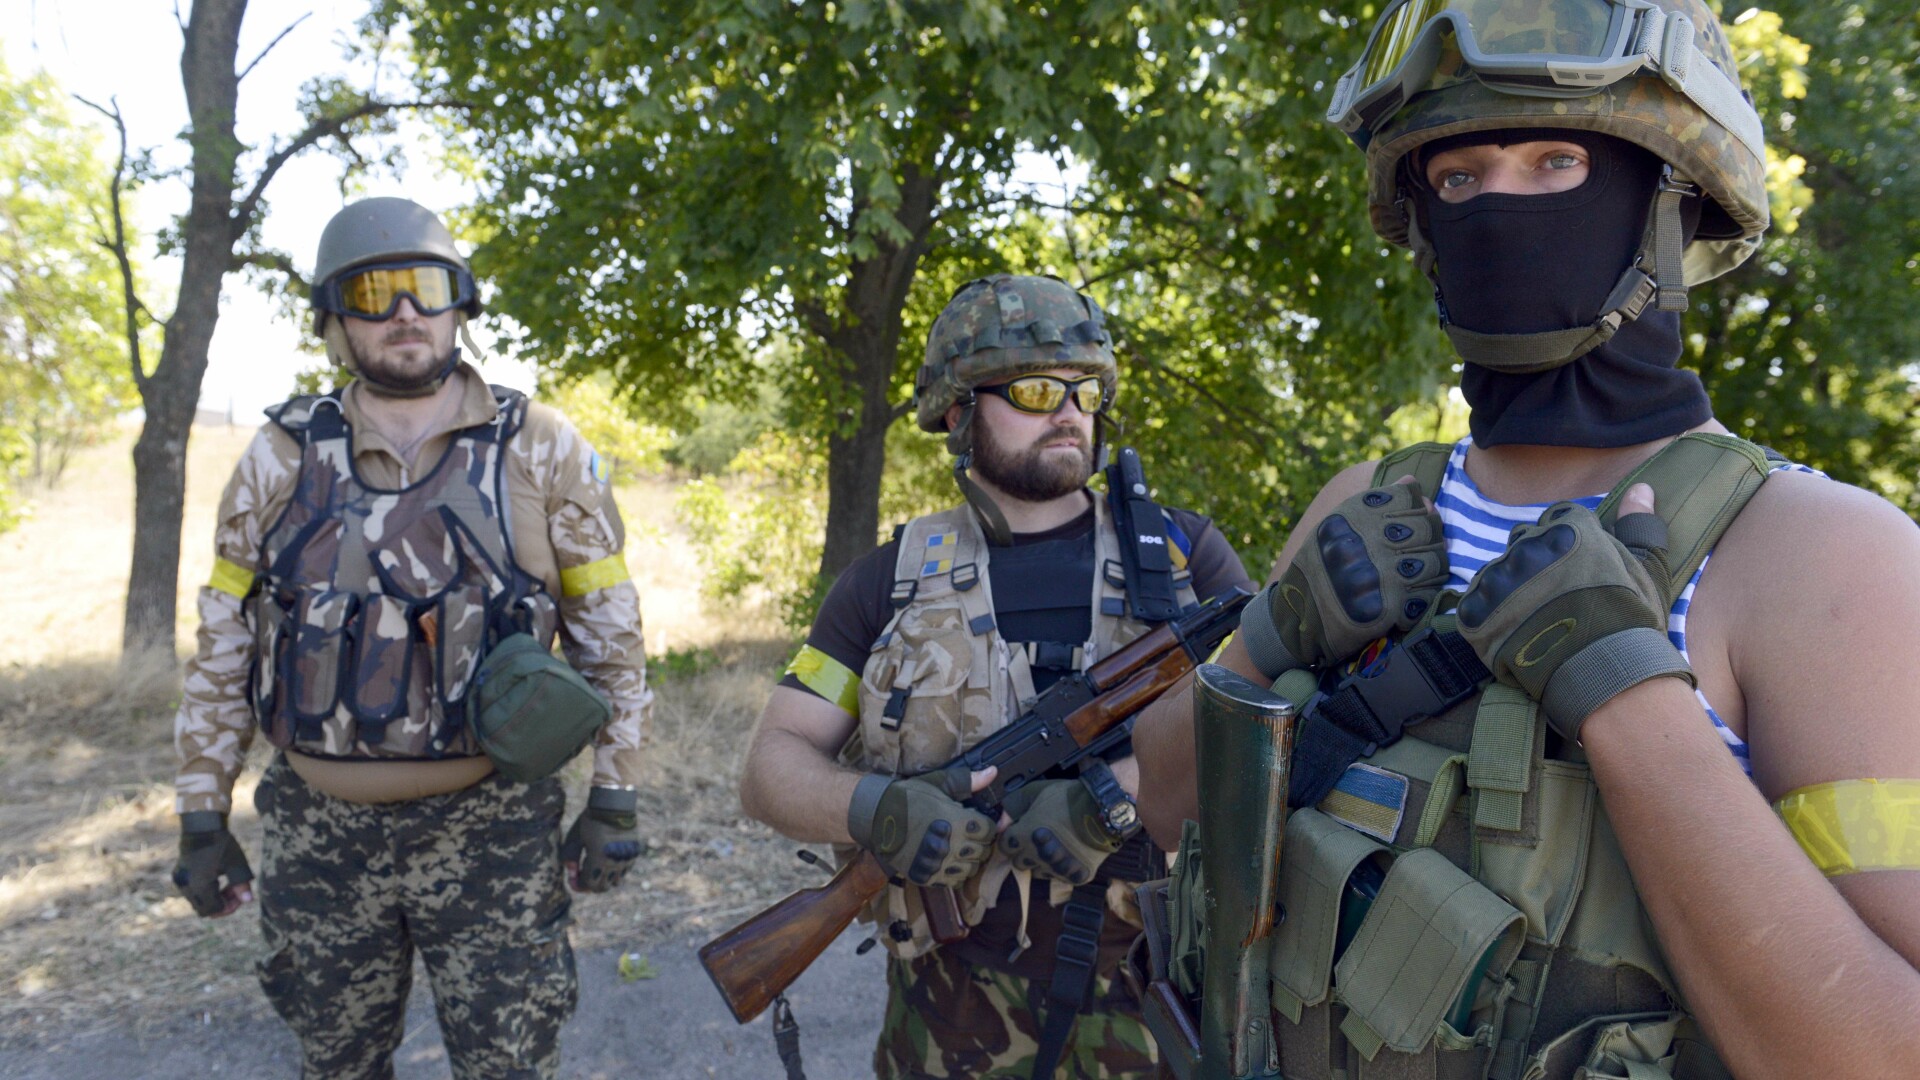 batalion voluntari ucraina